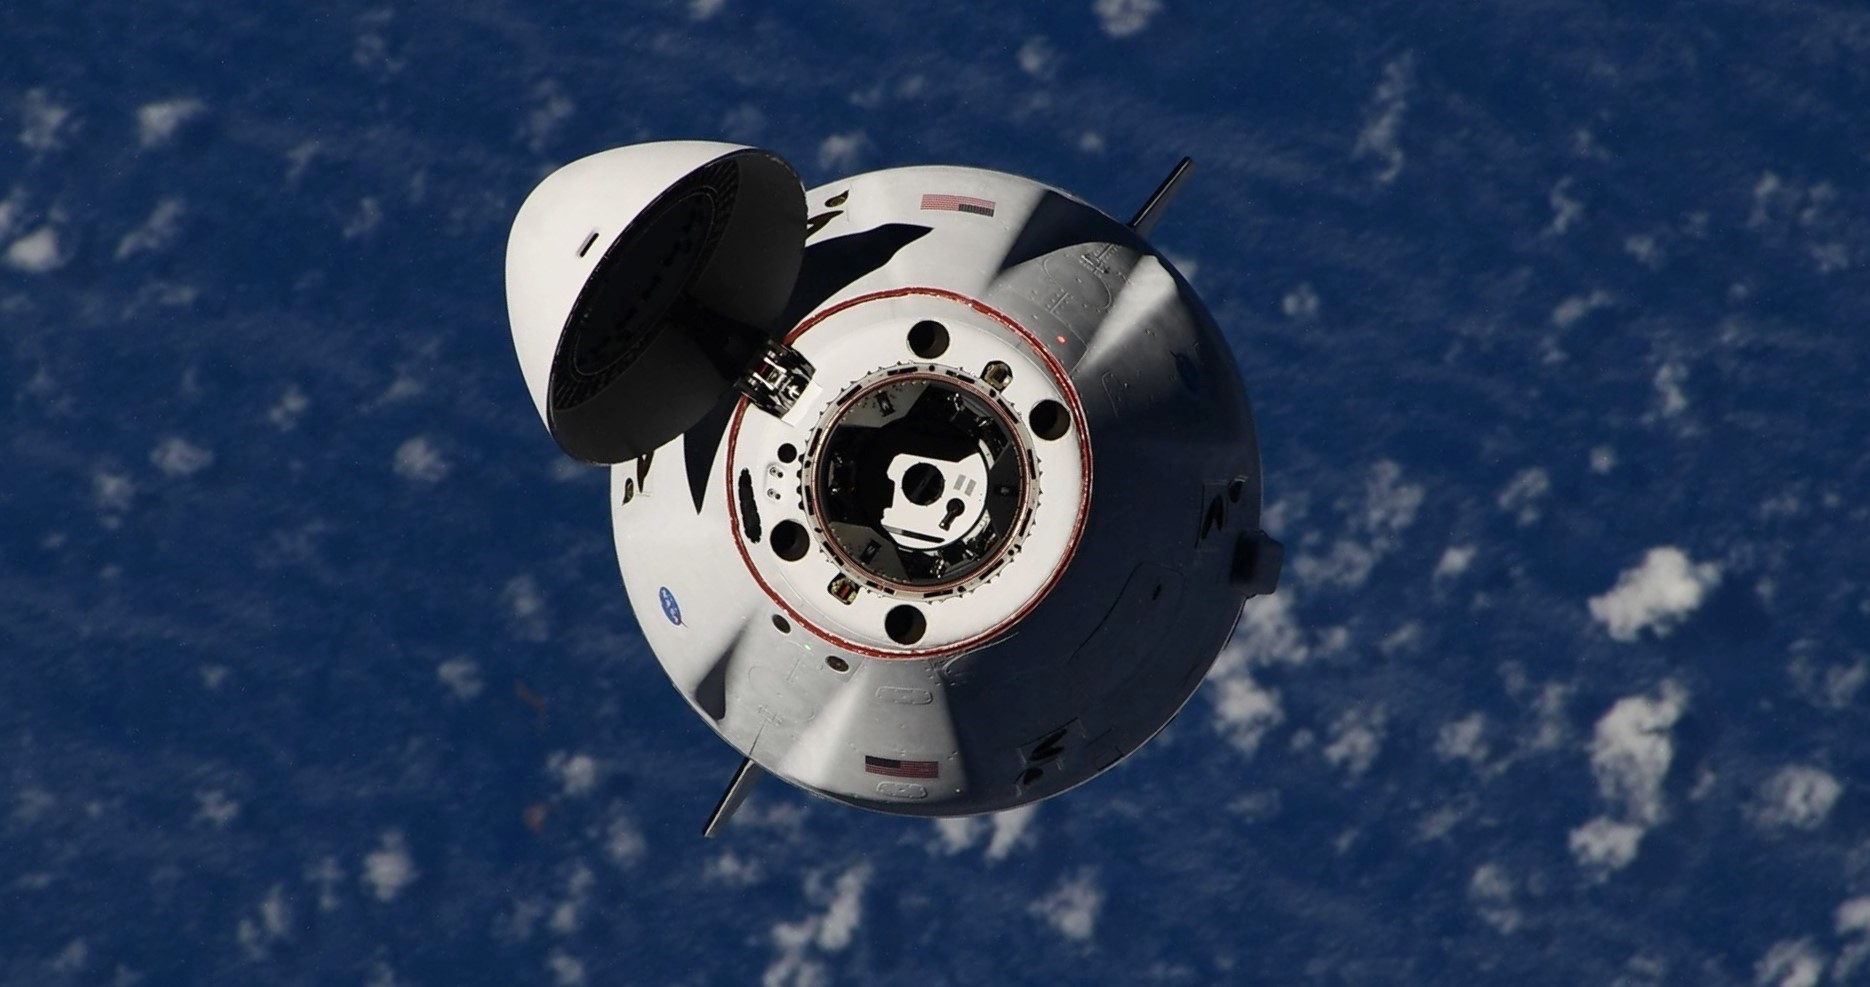 Космический корабль SpaceX отстыковался от космической станции для пятого орбитального выхода Dragon в этом году